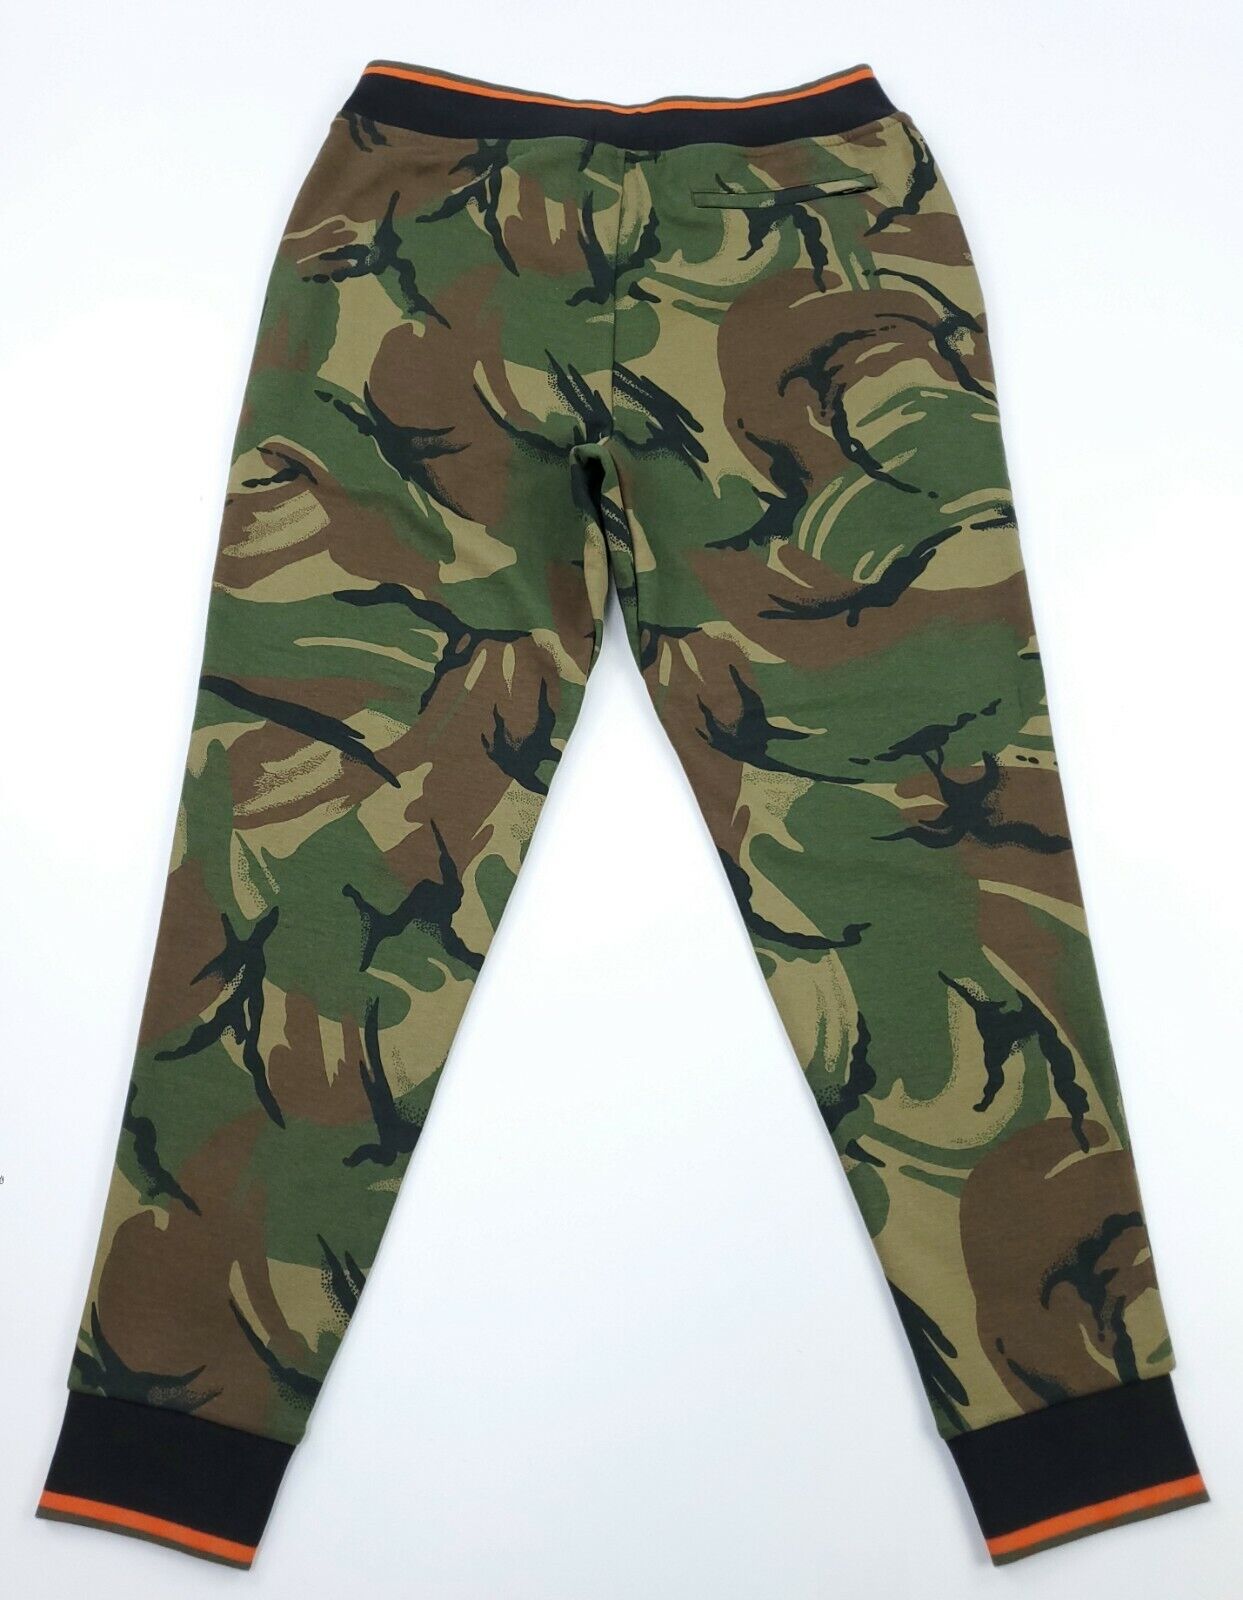 Pamflet deelnemer uitspraak Polo Ralph Lauren Men's S Double Knit Camo Camouflage Jogger Sweatpants NWT  885139974121 | eBay